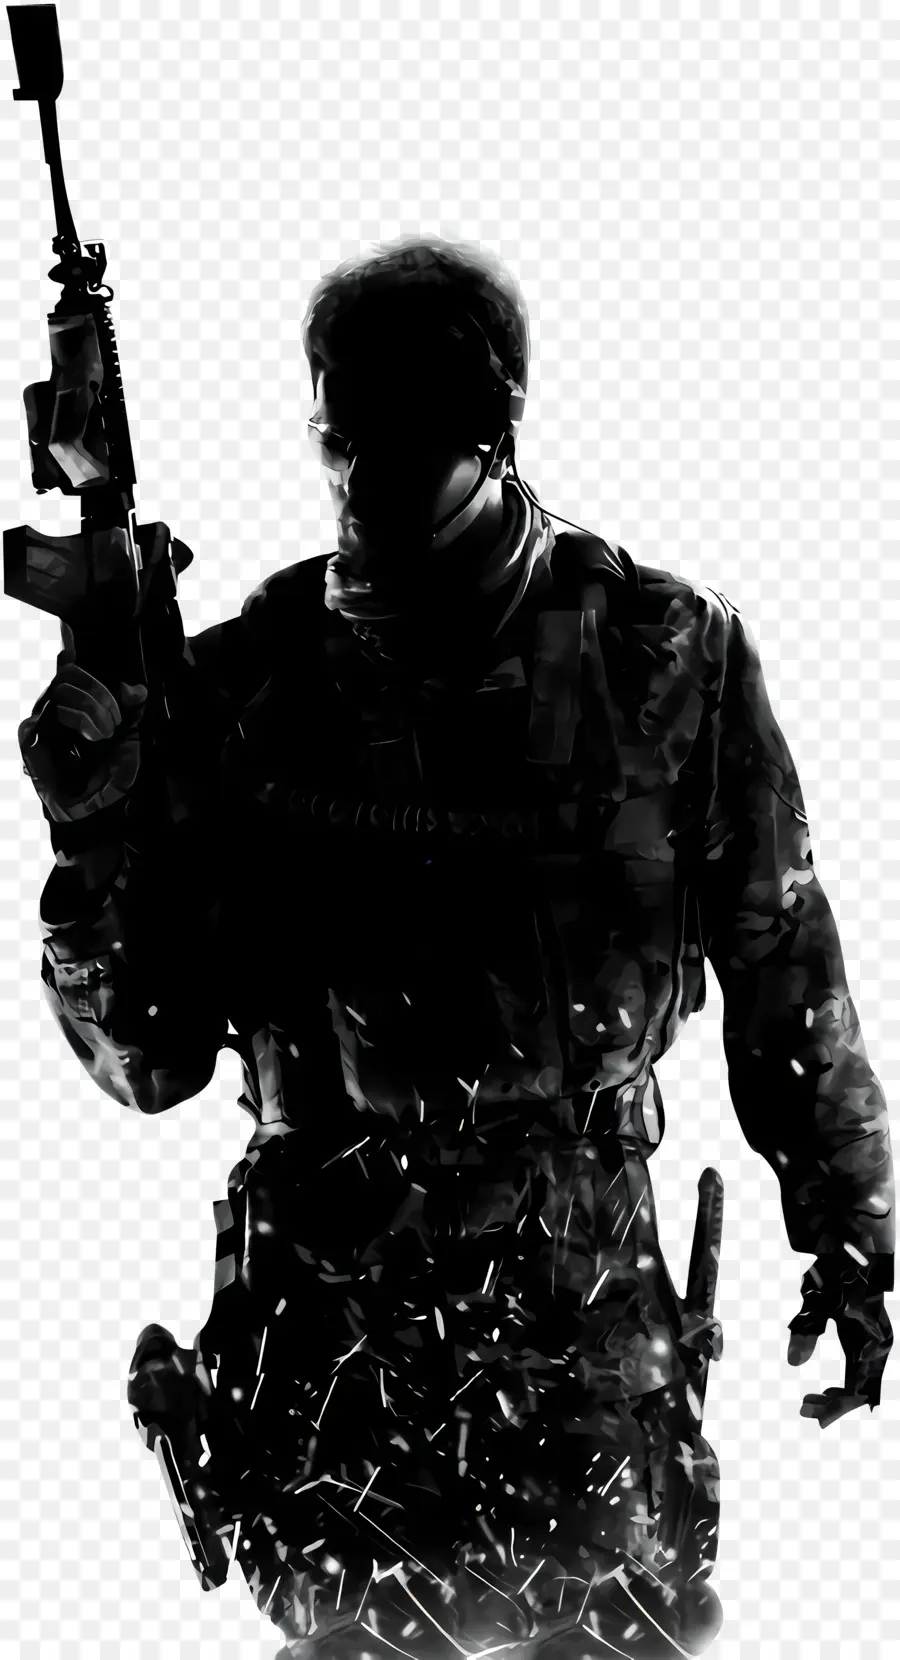 Call of Duty War Soldier Soldier Body Armor - Người lính với súng trường trên sân thượng, tâm trạng căng thẳng